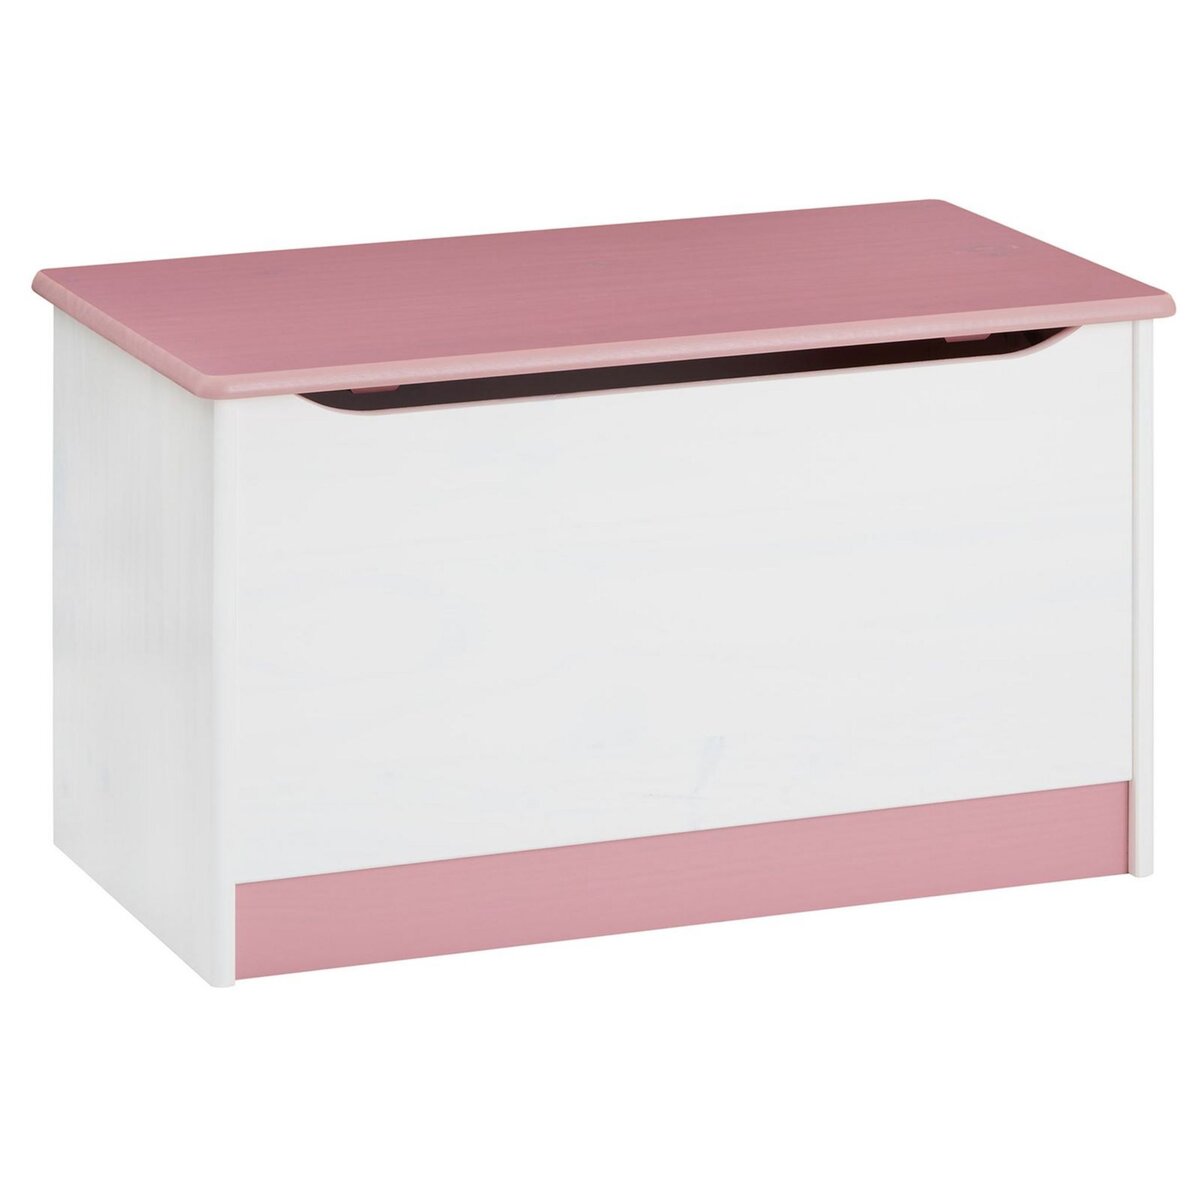 IDIMEX Coffre à jouets HANNAH coffre de rangement pin massif lasuré blanc rose